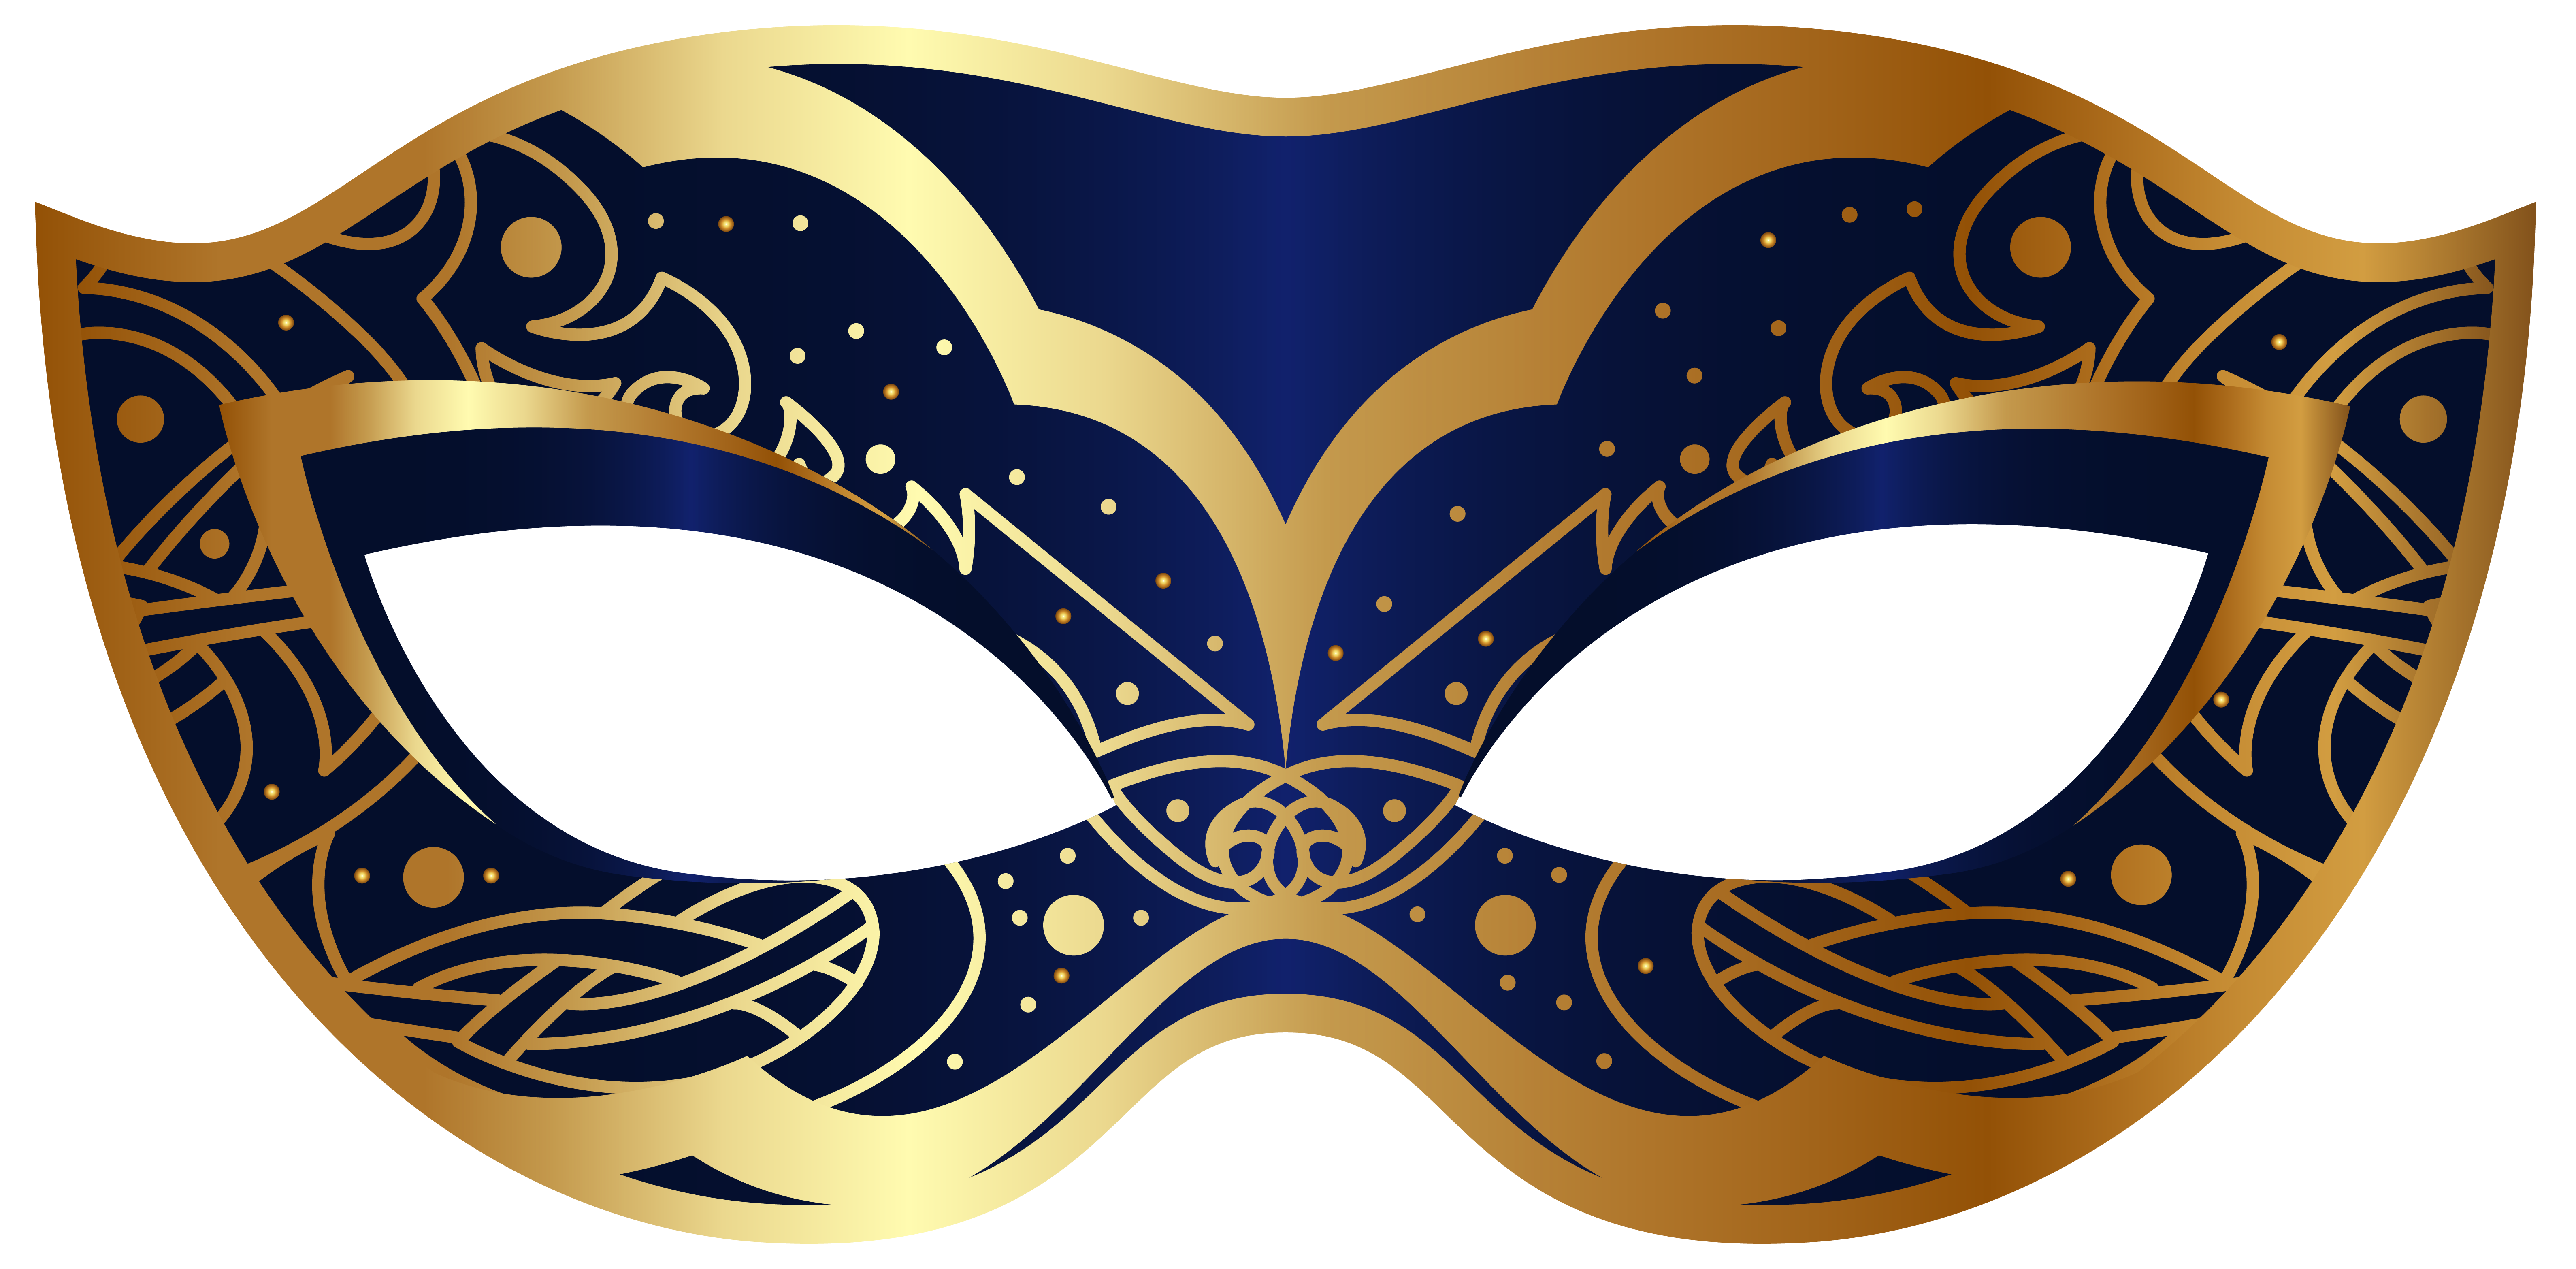 invitation clipart masquerade